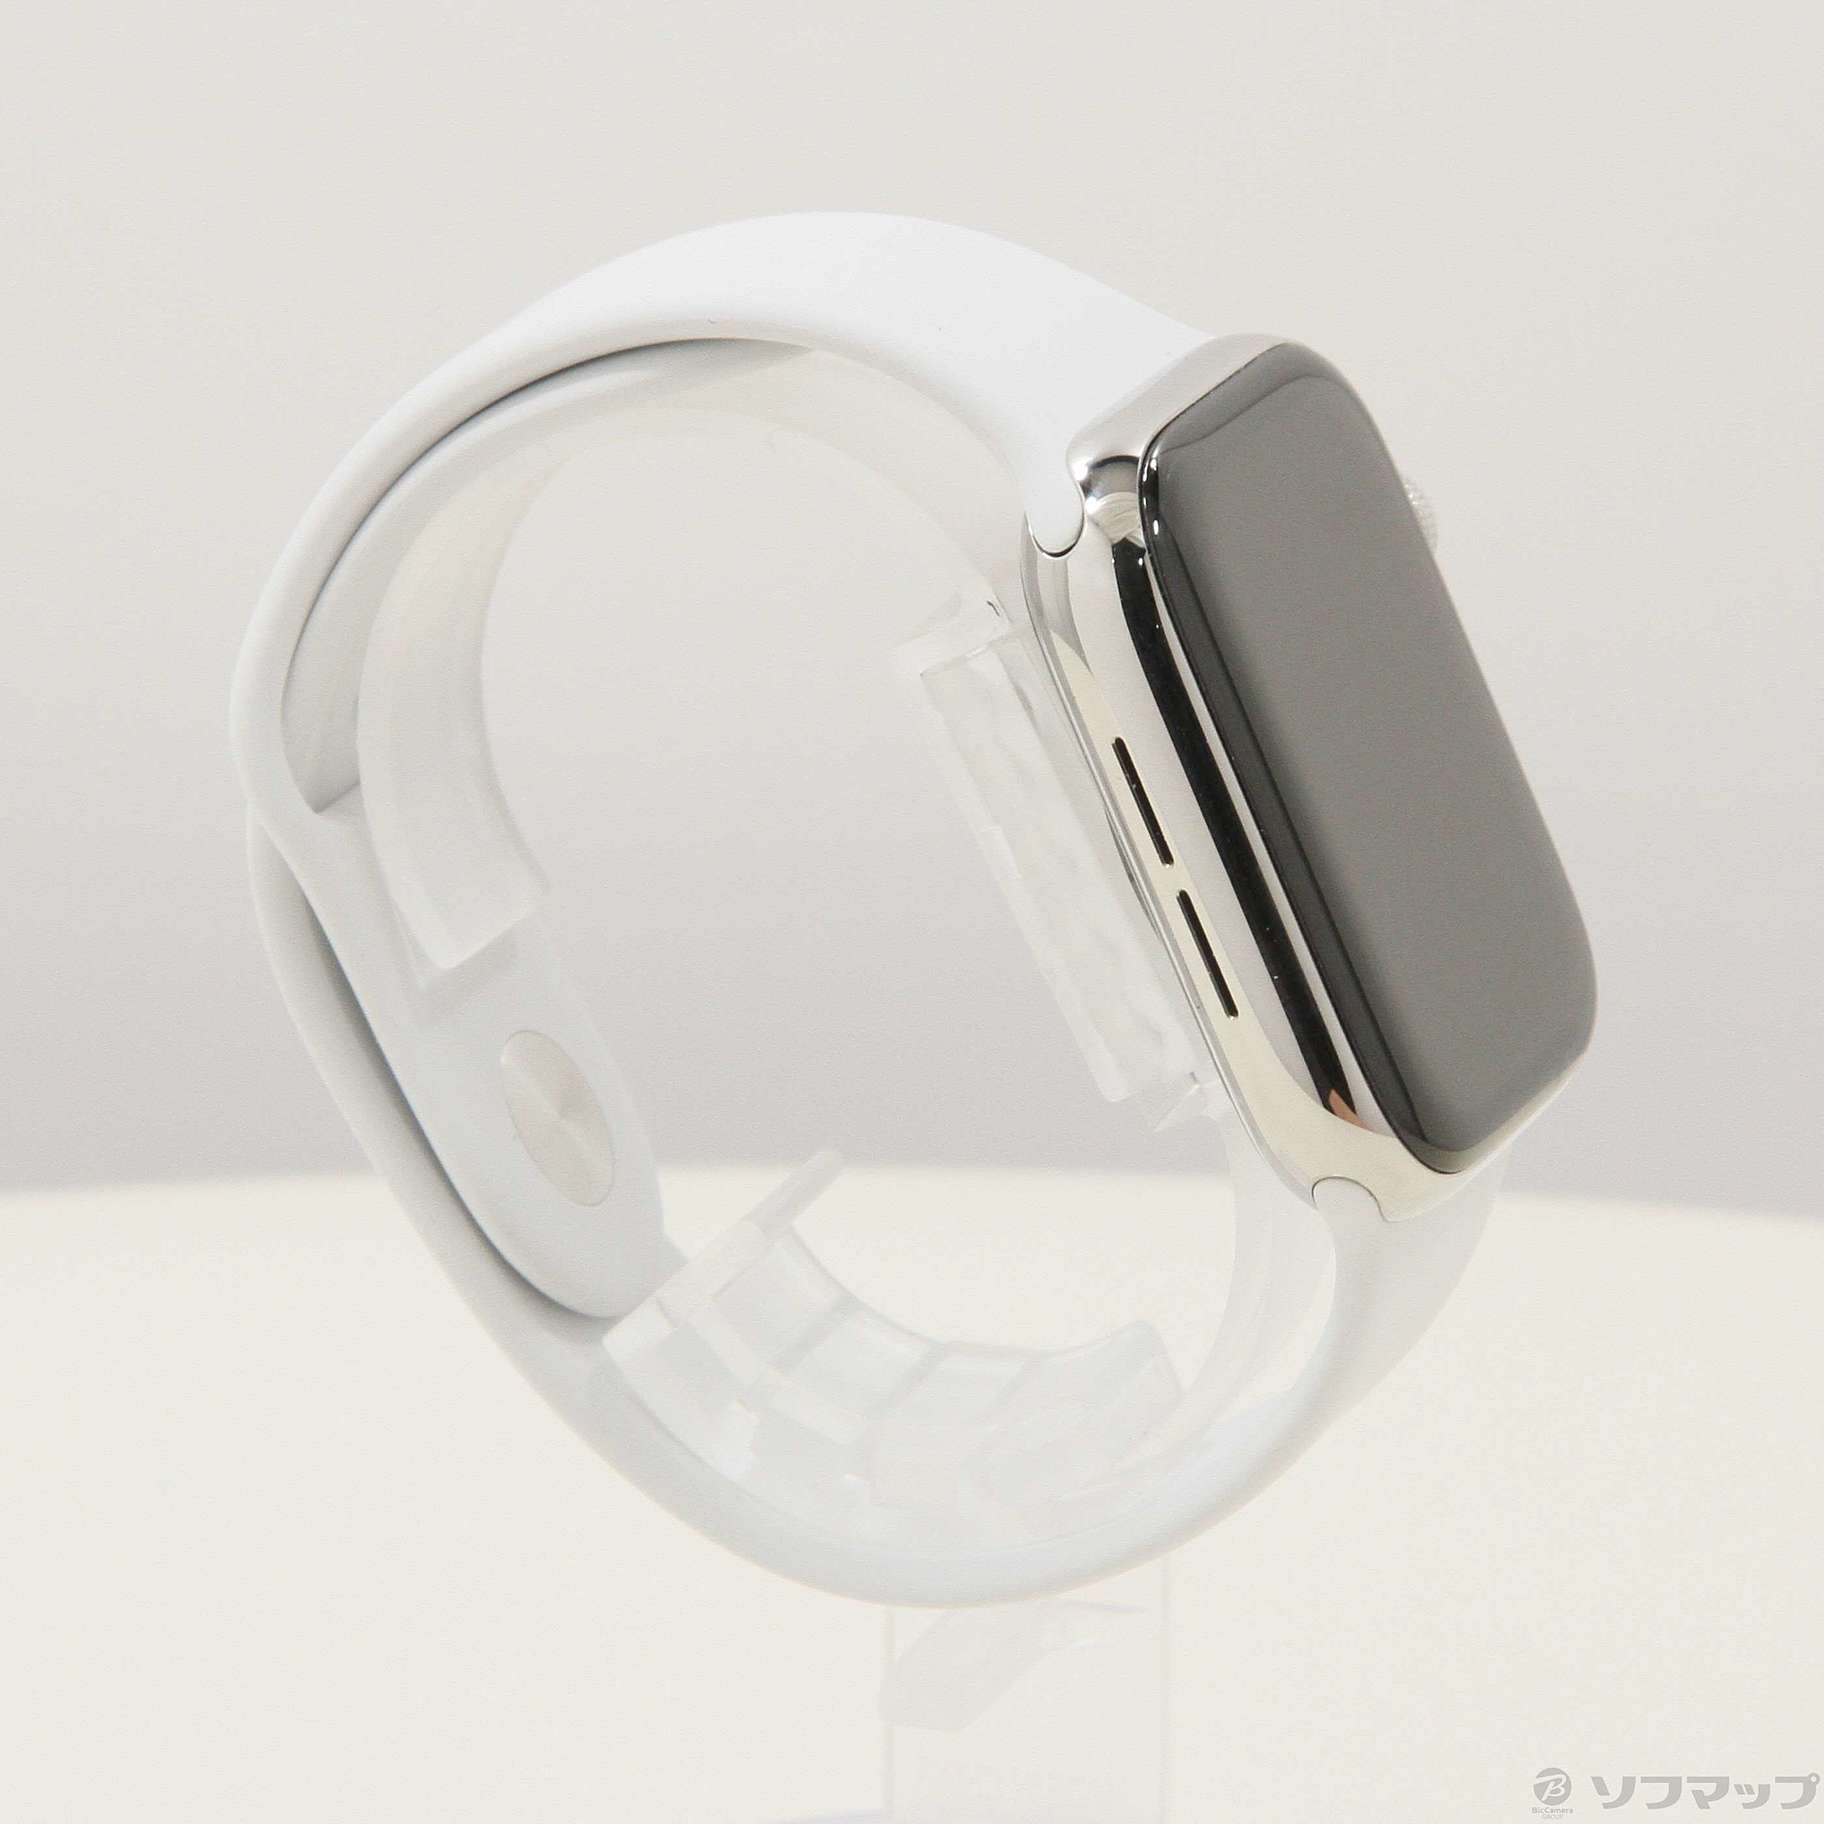 中古】Apple Watch Series 4 GPS + Cellular 44mm ステンレススチール ...